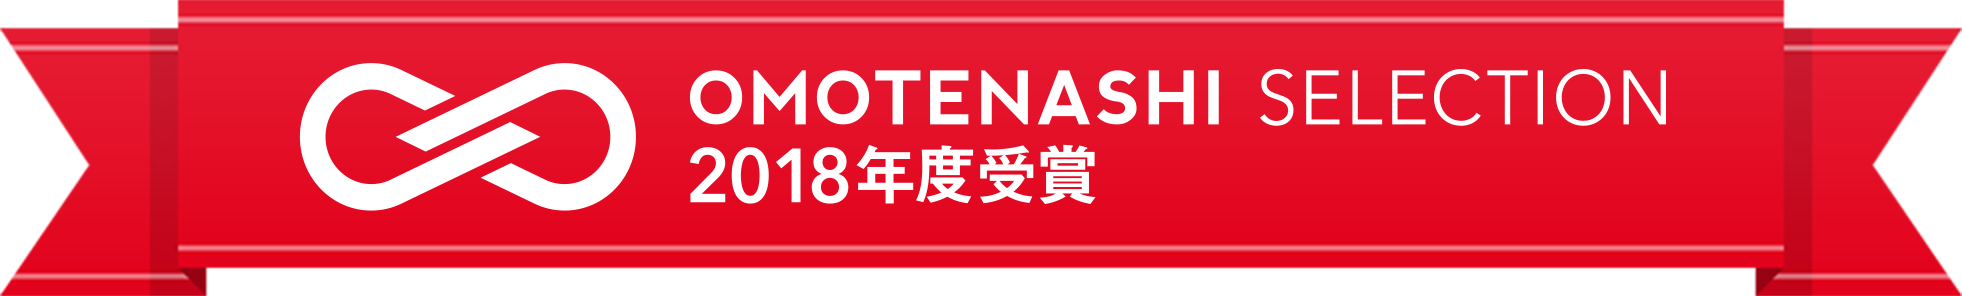 OMOTENASHI SELECTION 2018